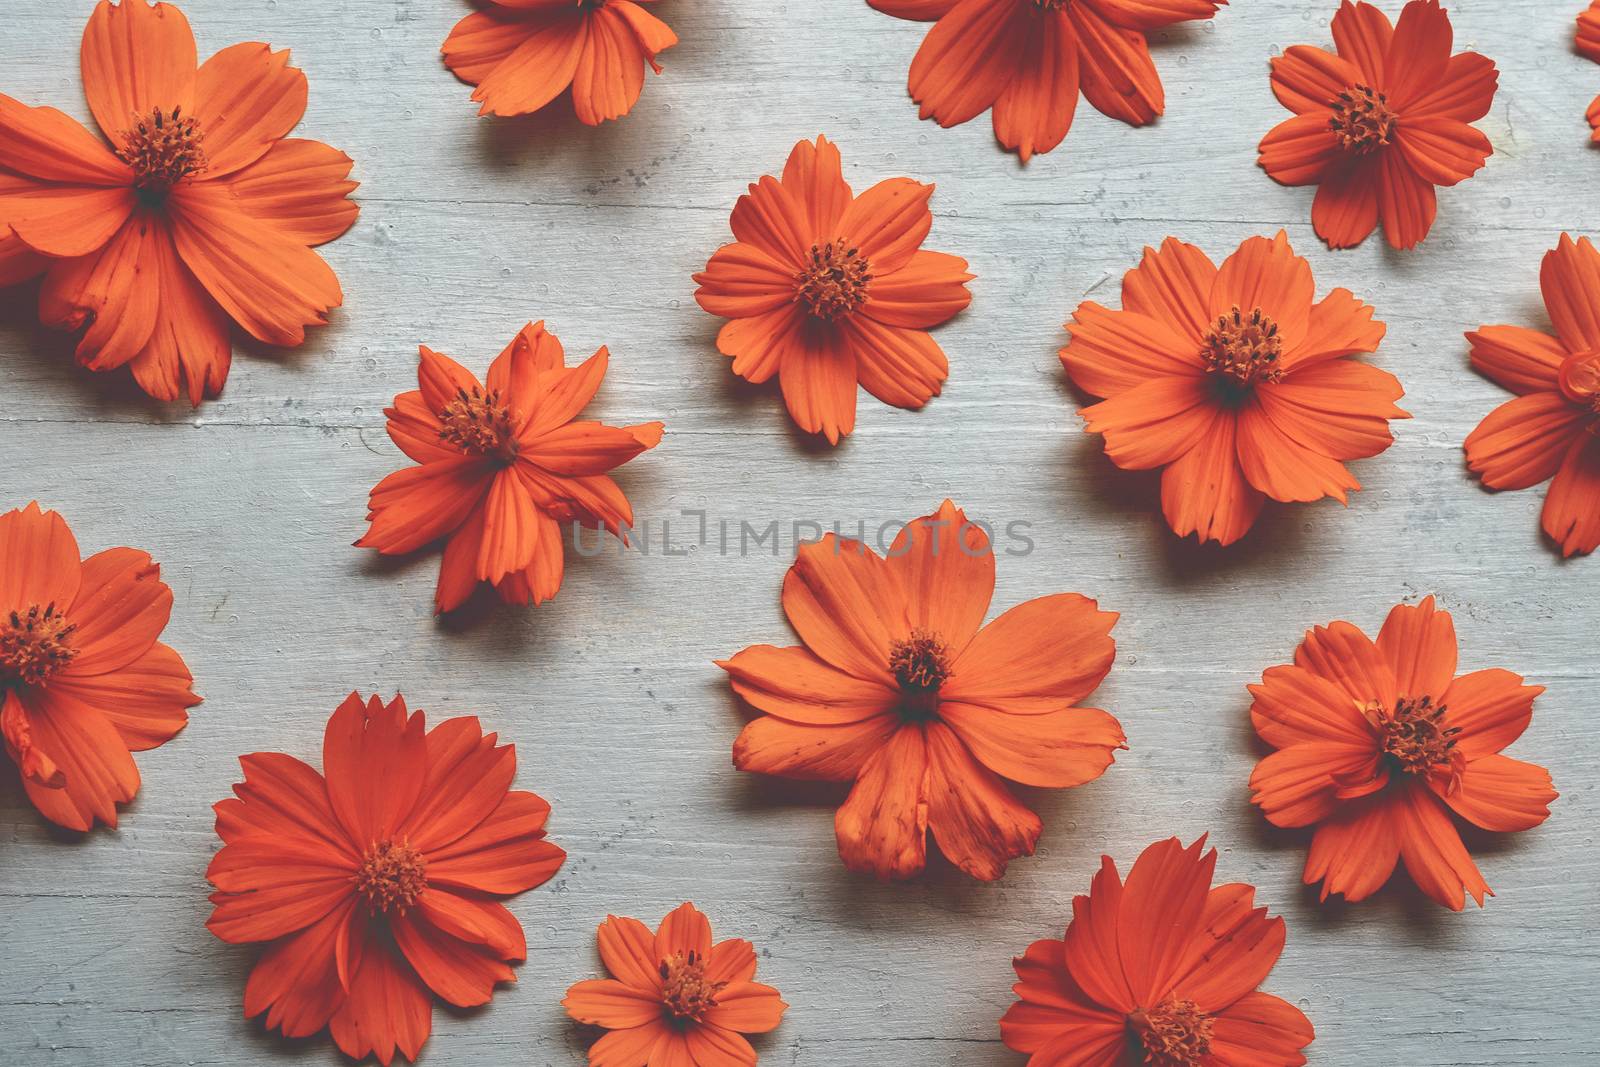 Orange cosmos flower wallpaper background.